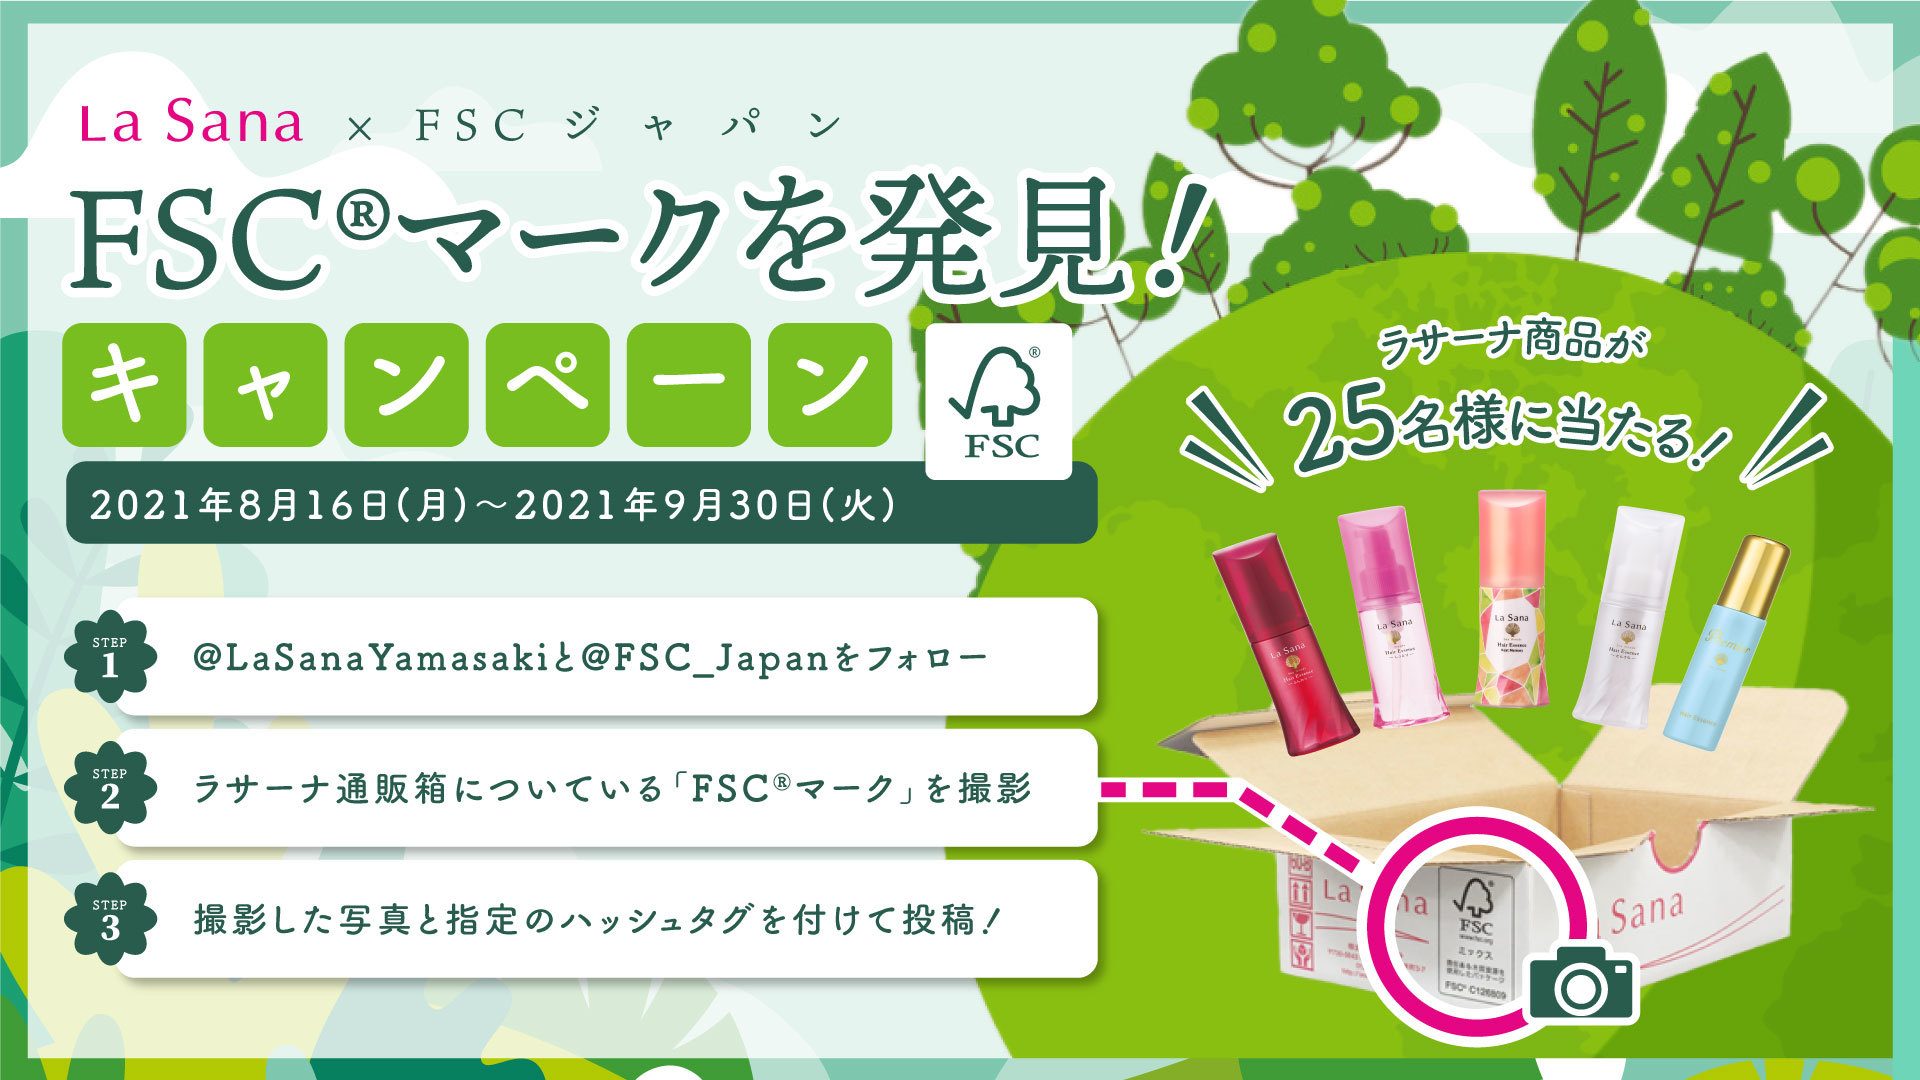 海藻コスメブランド「ラサーナ」とFSCジャパンが
共同キャンペーンを8月16日より開始！